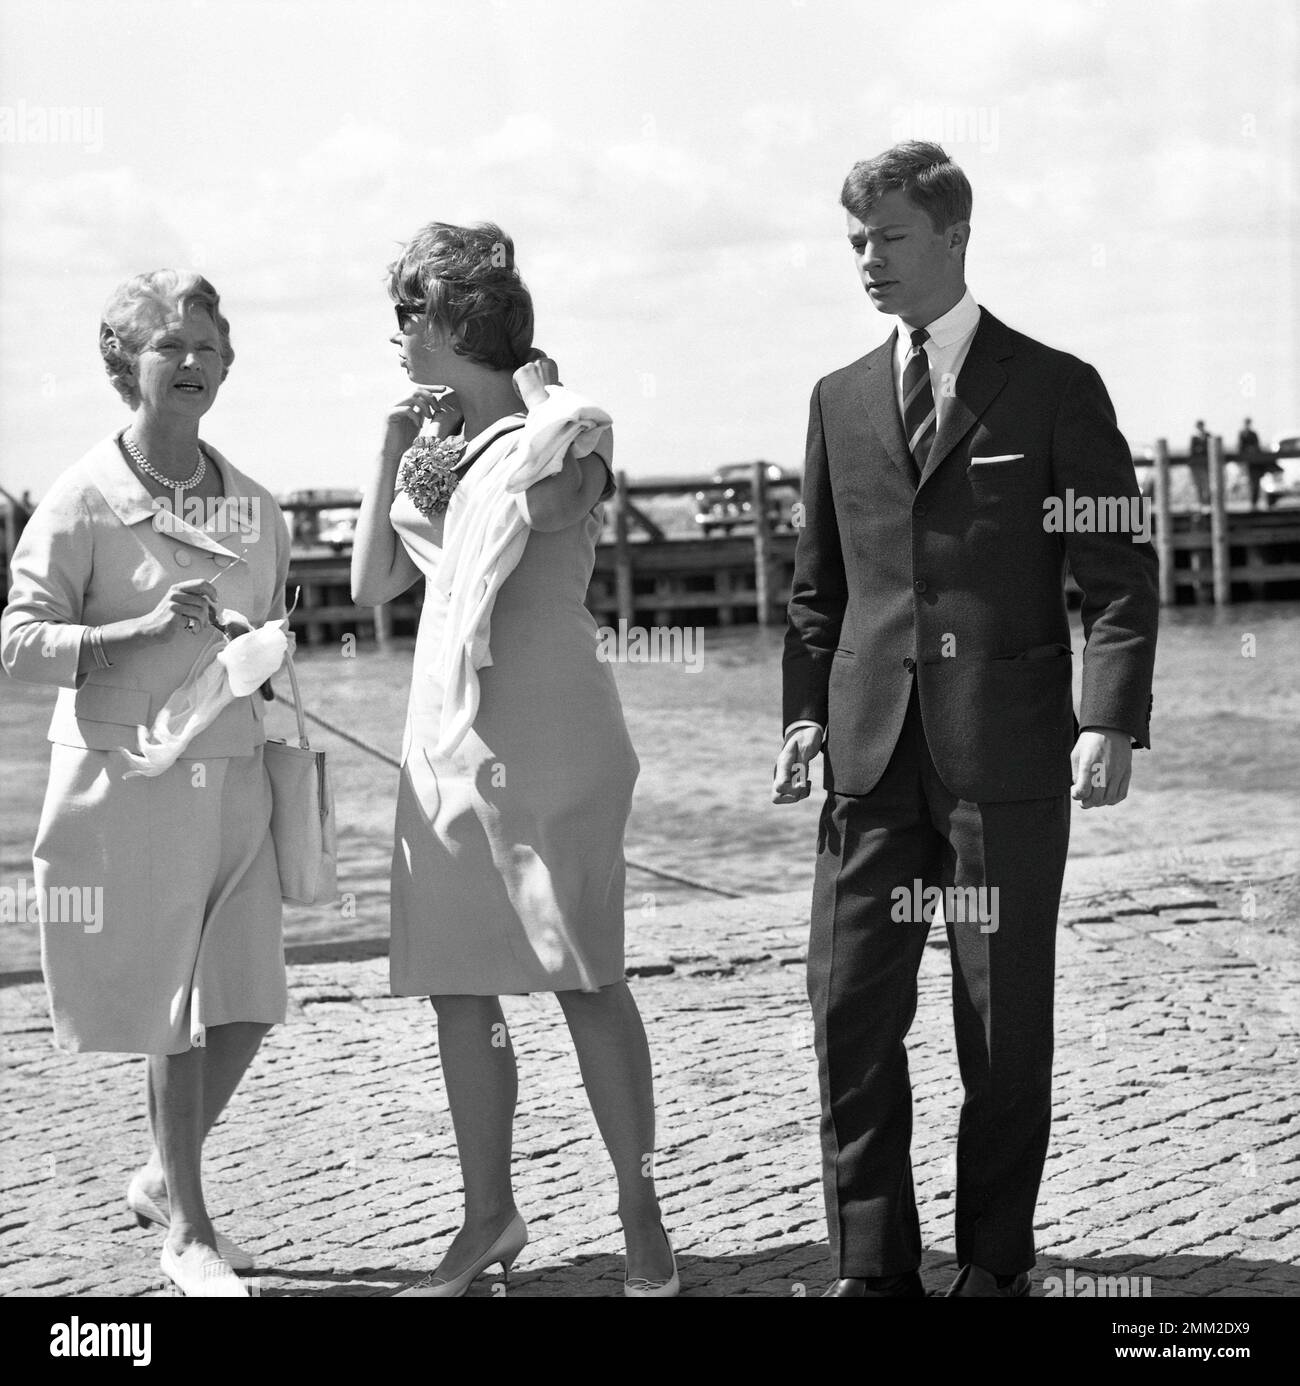 Carl XVI Gustaf, König von Schweden. Geboren am 30. april 1946. Als Kronprinz. Teilnahme an der Hochzeit seiner Schwester Prinzessin Margaretha von Schweden am 30. juni 1964. Er wird mit seiner Mutter Prinzessin Sibylla und seiner Schwester Christina abgebildet. Stockfoto